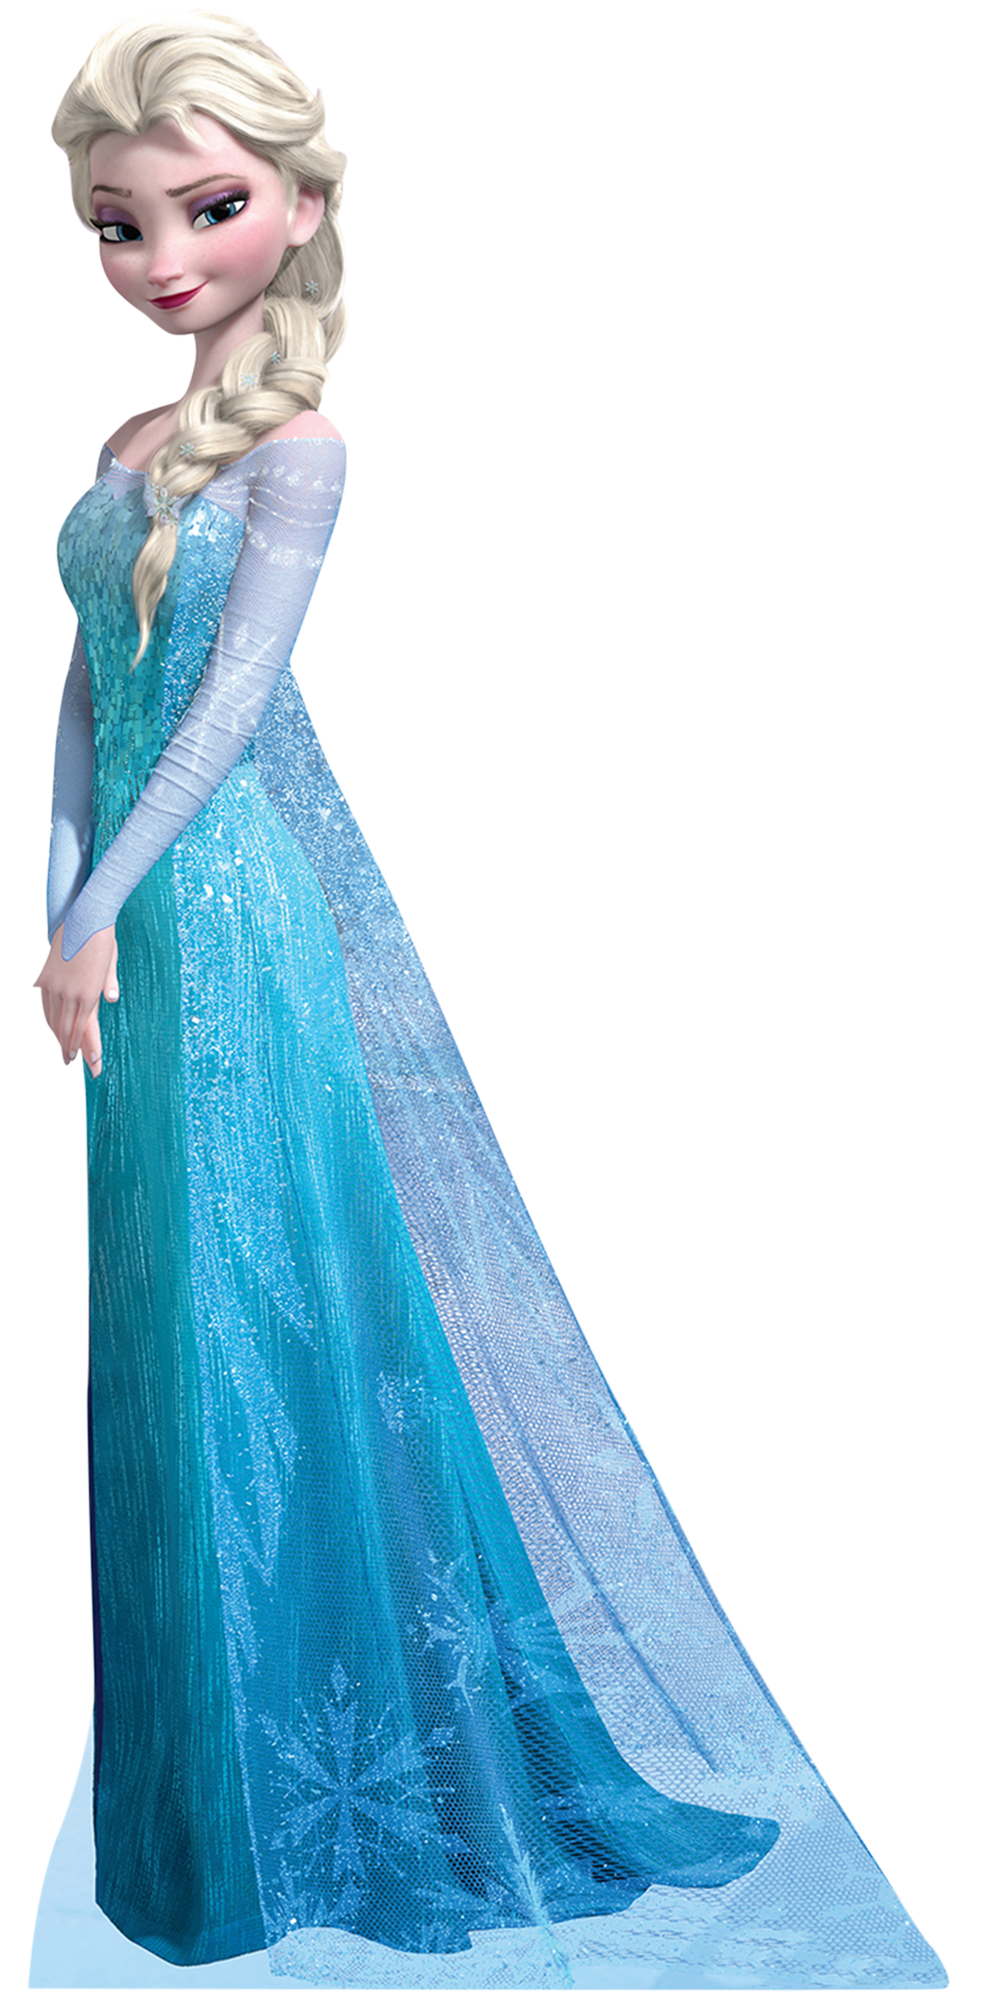 Elsa clipart frozen theme. Png transparent images all